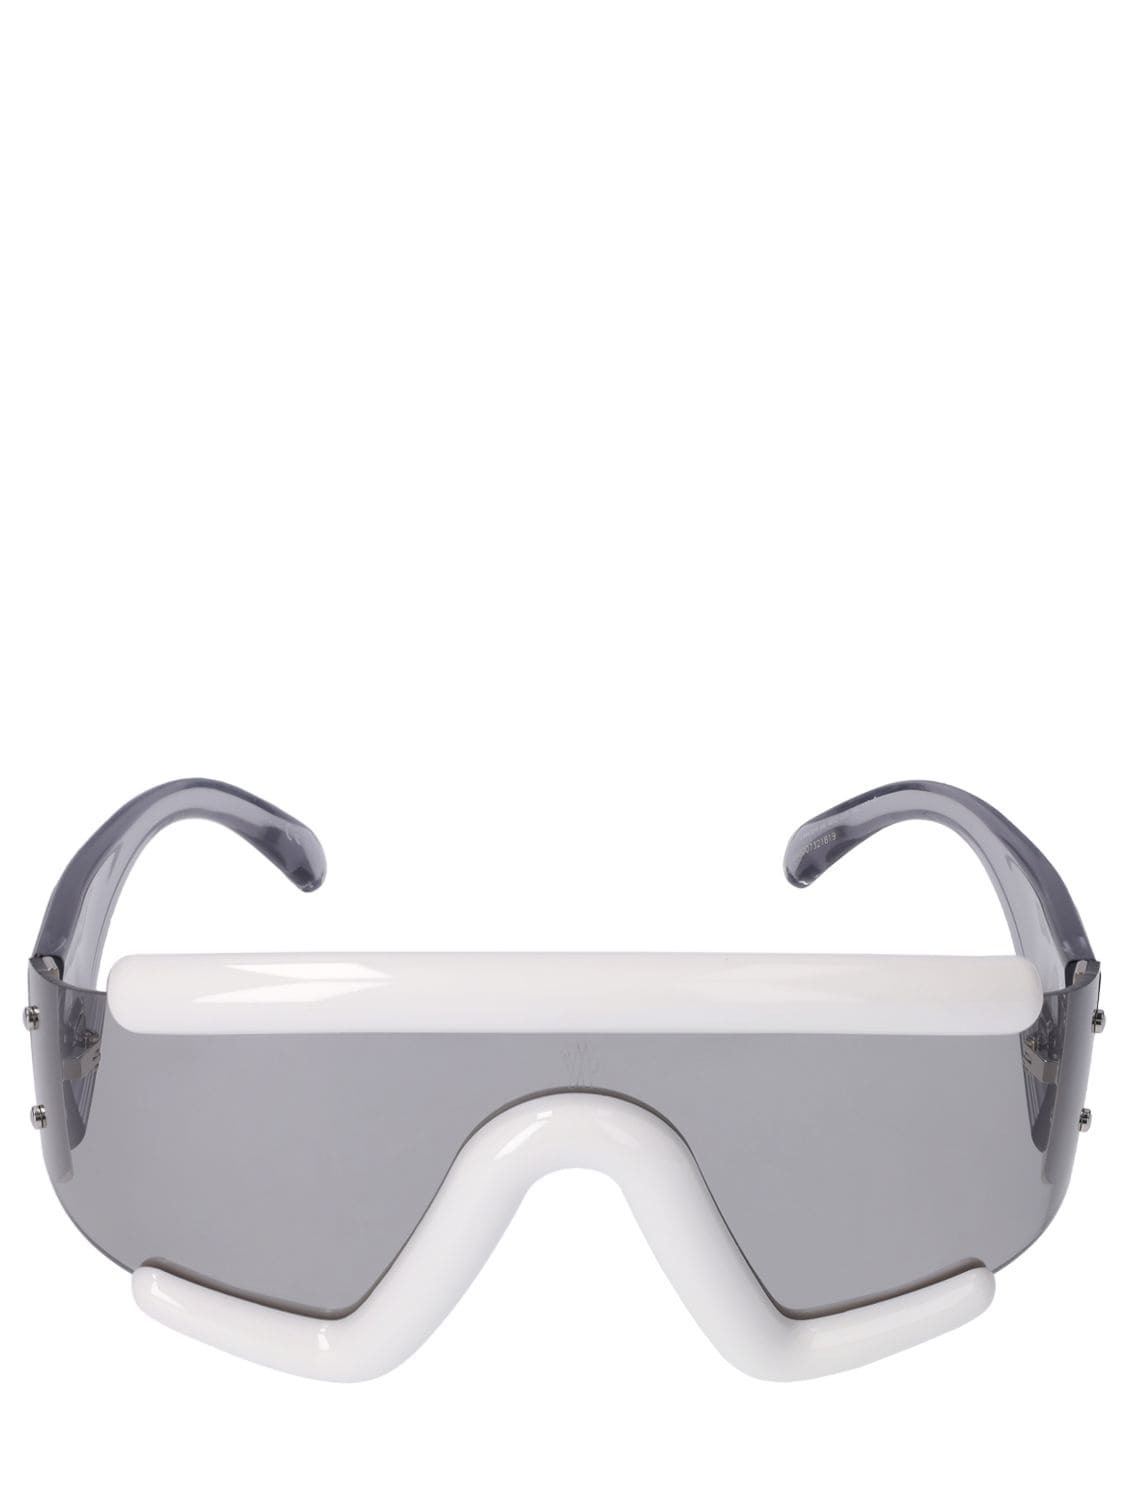 MONCLER Lancer Sunglasses in white